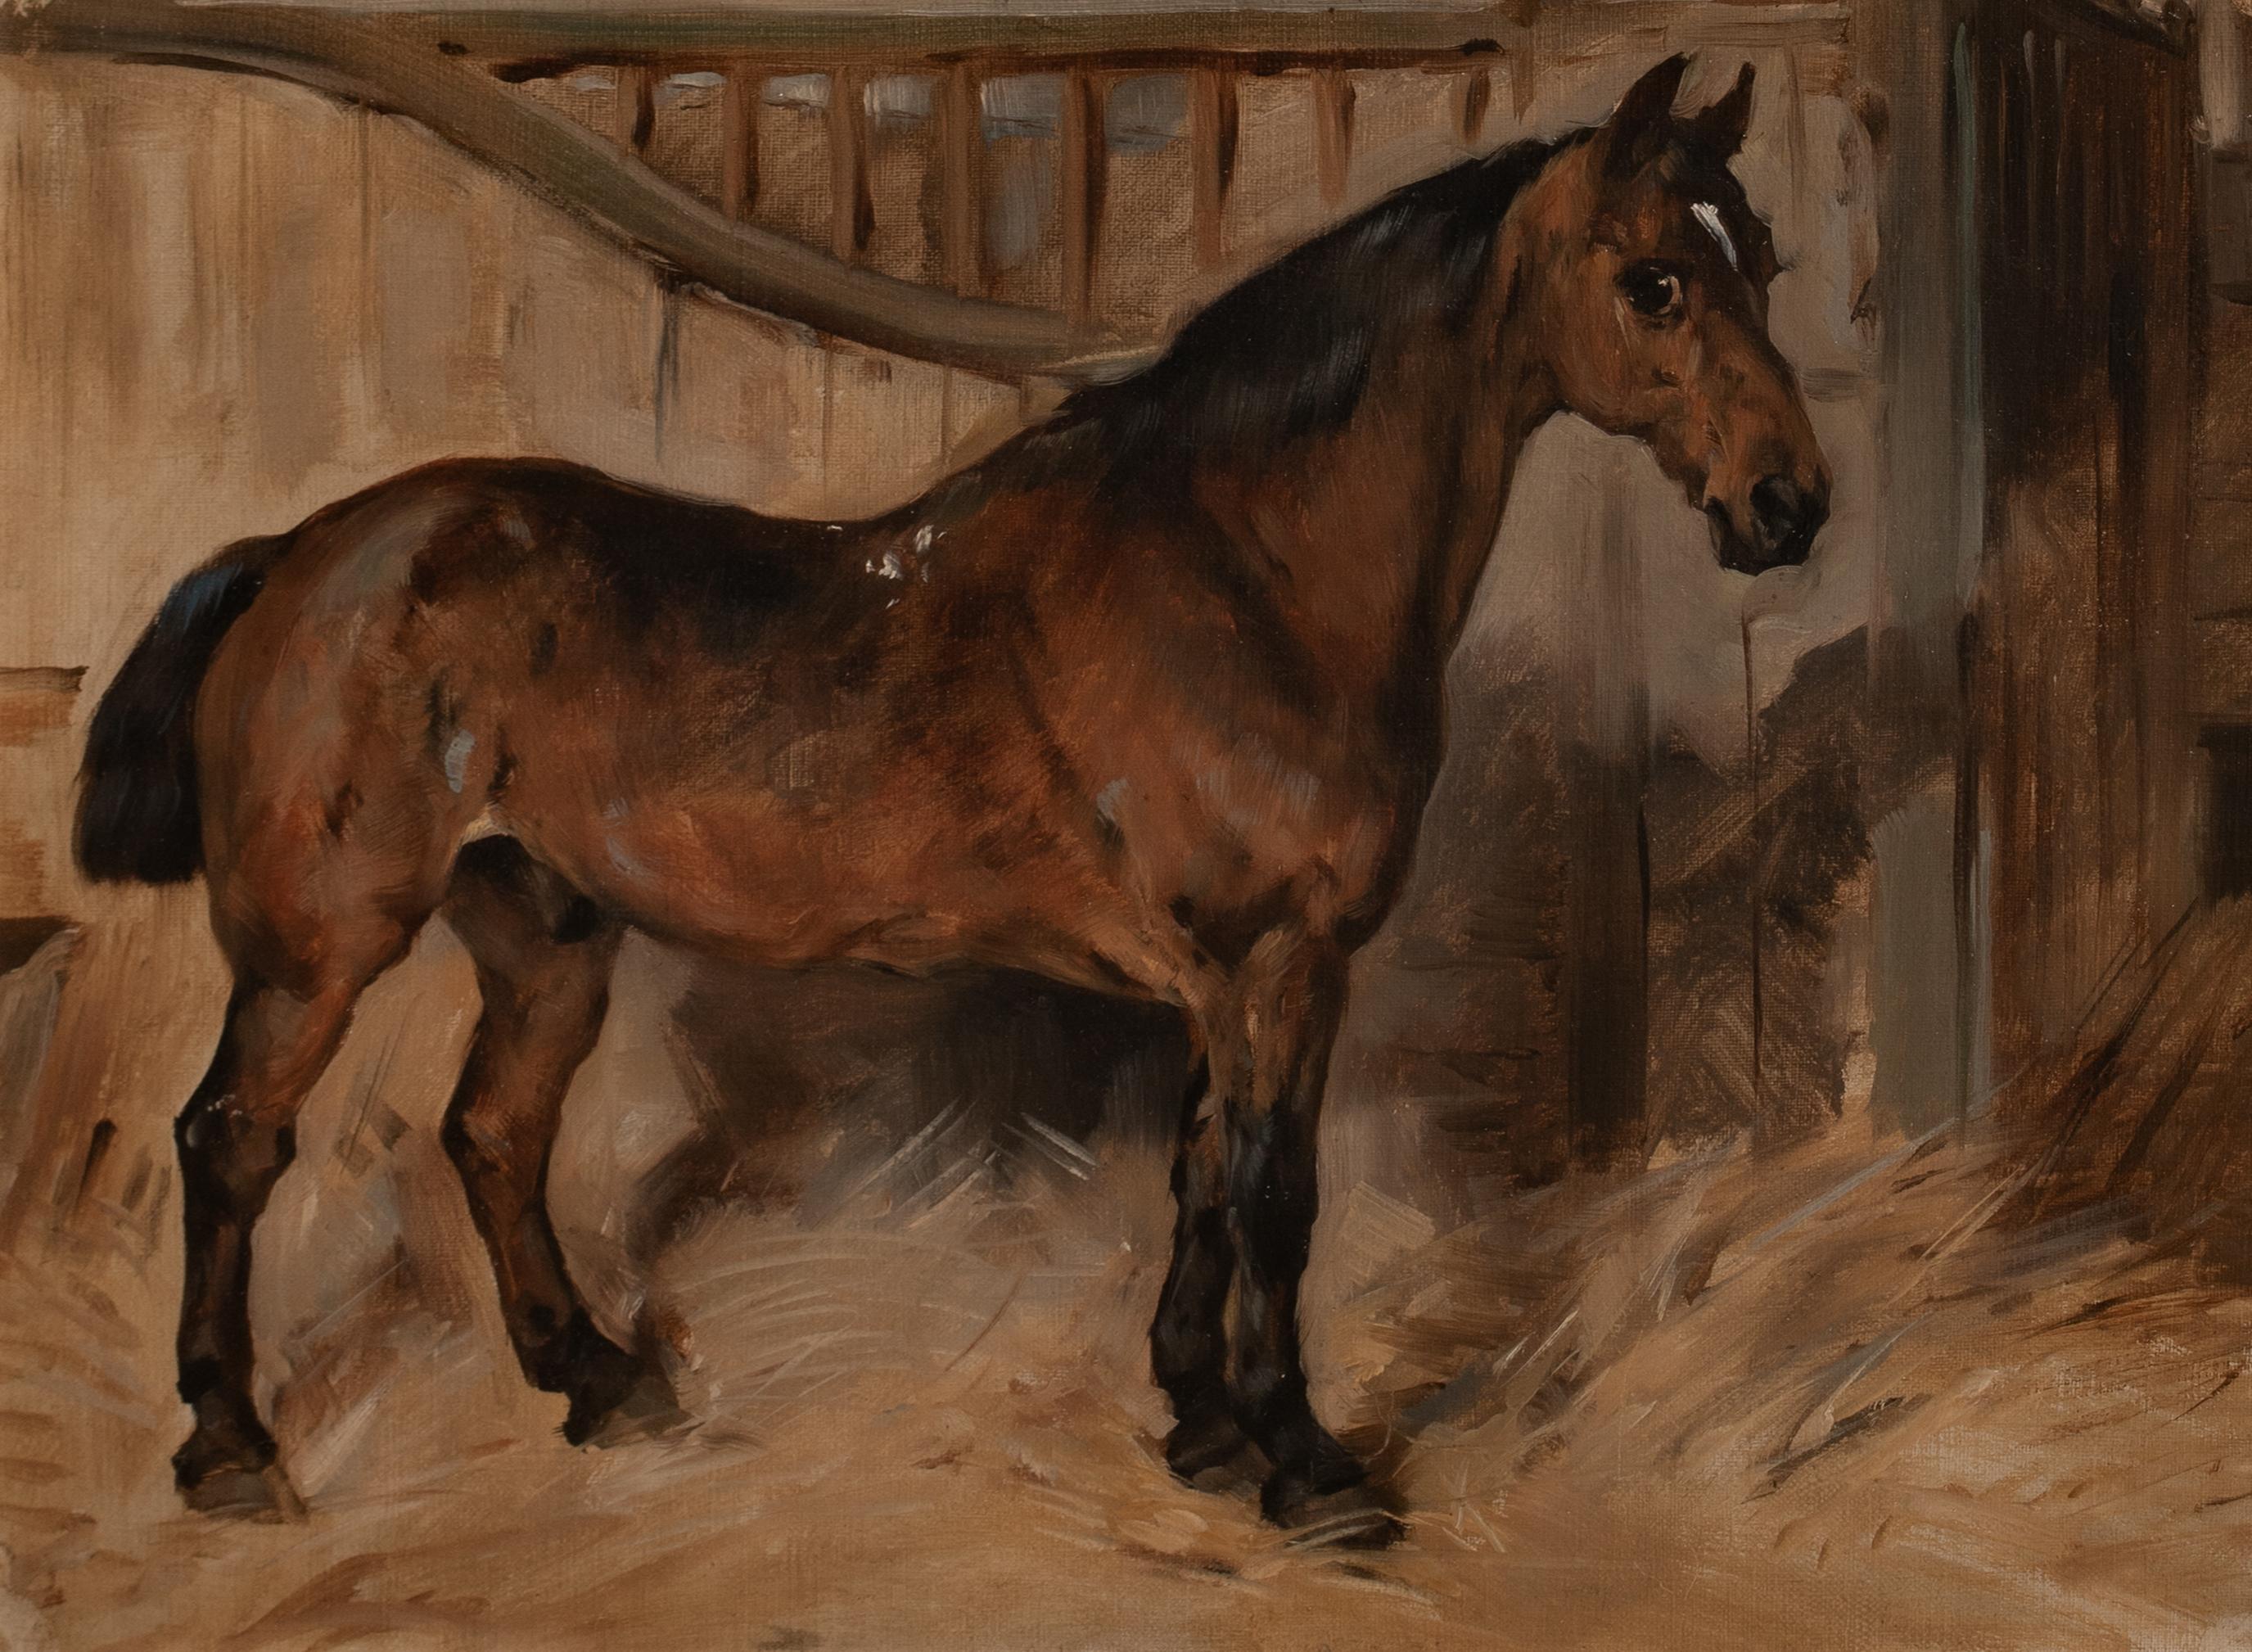 Portrait d'un cheval de calèche, 19e siècle

par JOHN Emme (1843-1912)

Grand portrait du 19e siècle d'un cheval d'attelage bai dans un box, huile sur toile de John Emme. Excellente qualité et excellent état de conservation des œuvres du célèbre